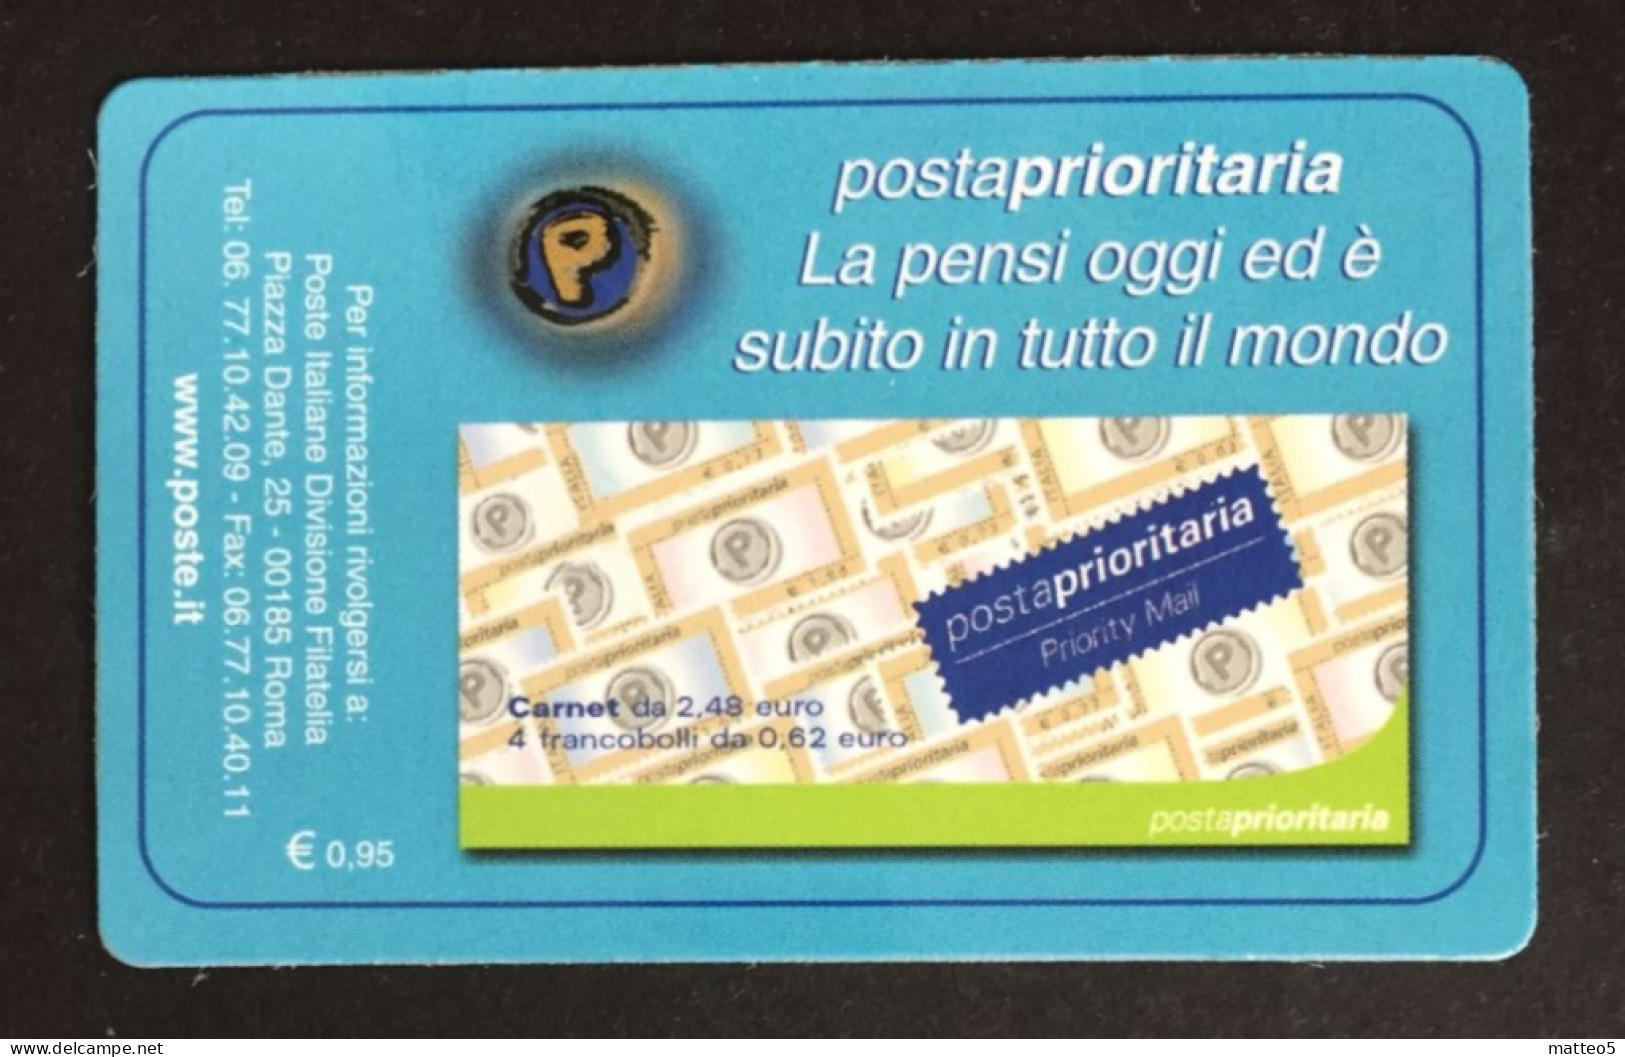 Italia - Tessera Filatelica N° 15  Posta Prioritaria  Euro 0,77  - A1 - Philatelistische Karten